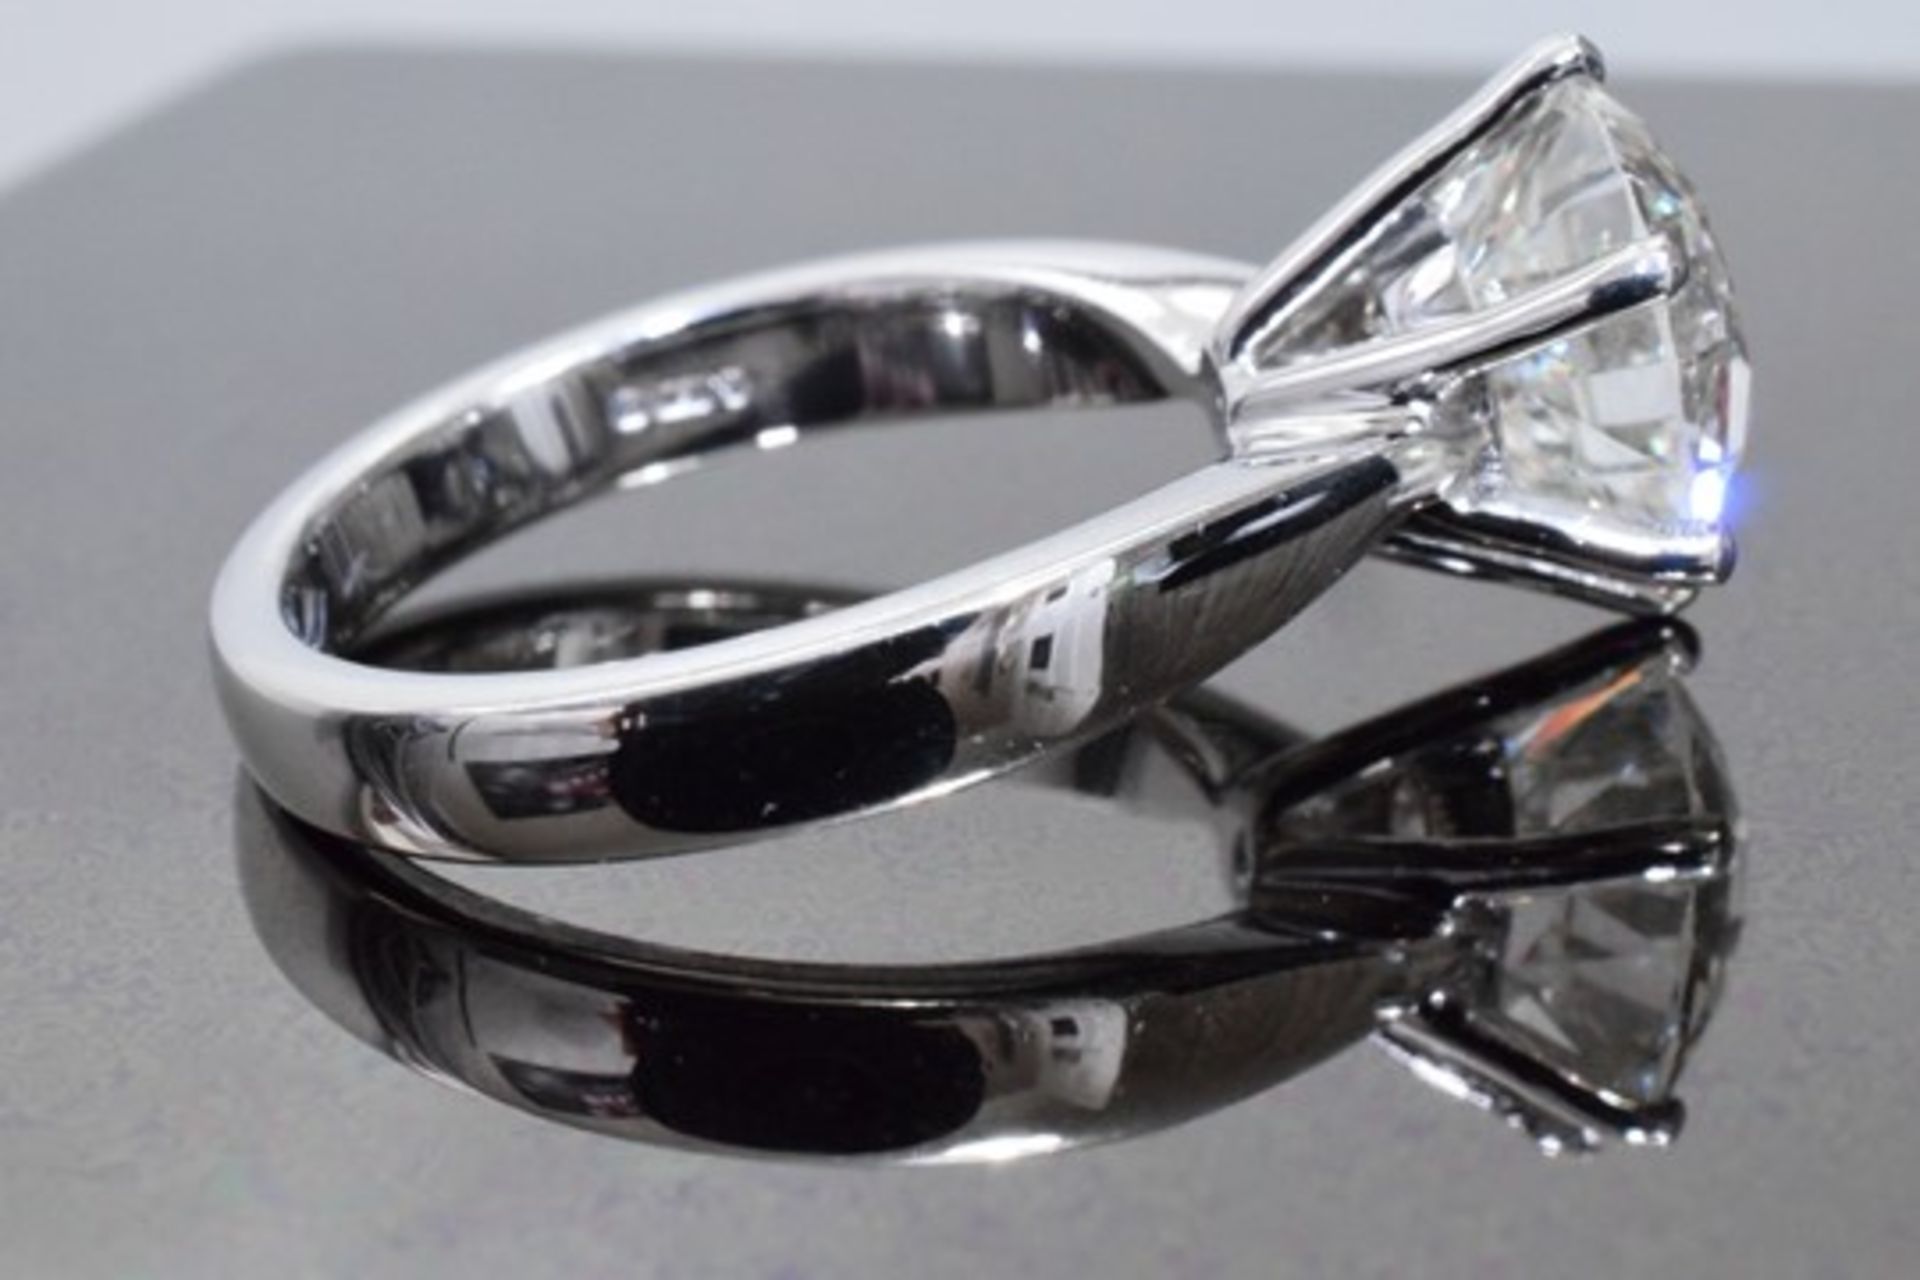 3.70 Carat Diamond Ring Set in White Gold - Image 2 of 8